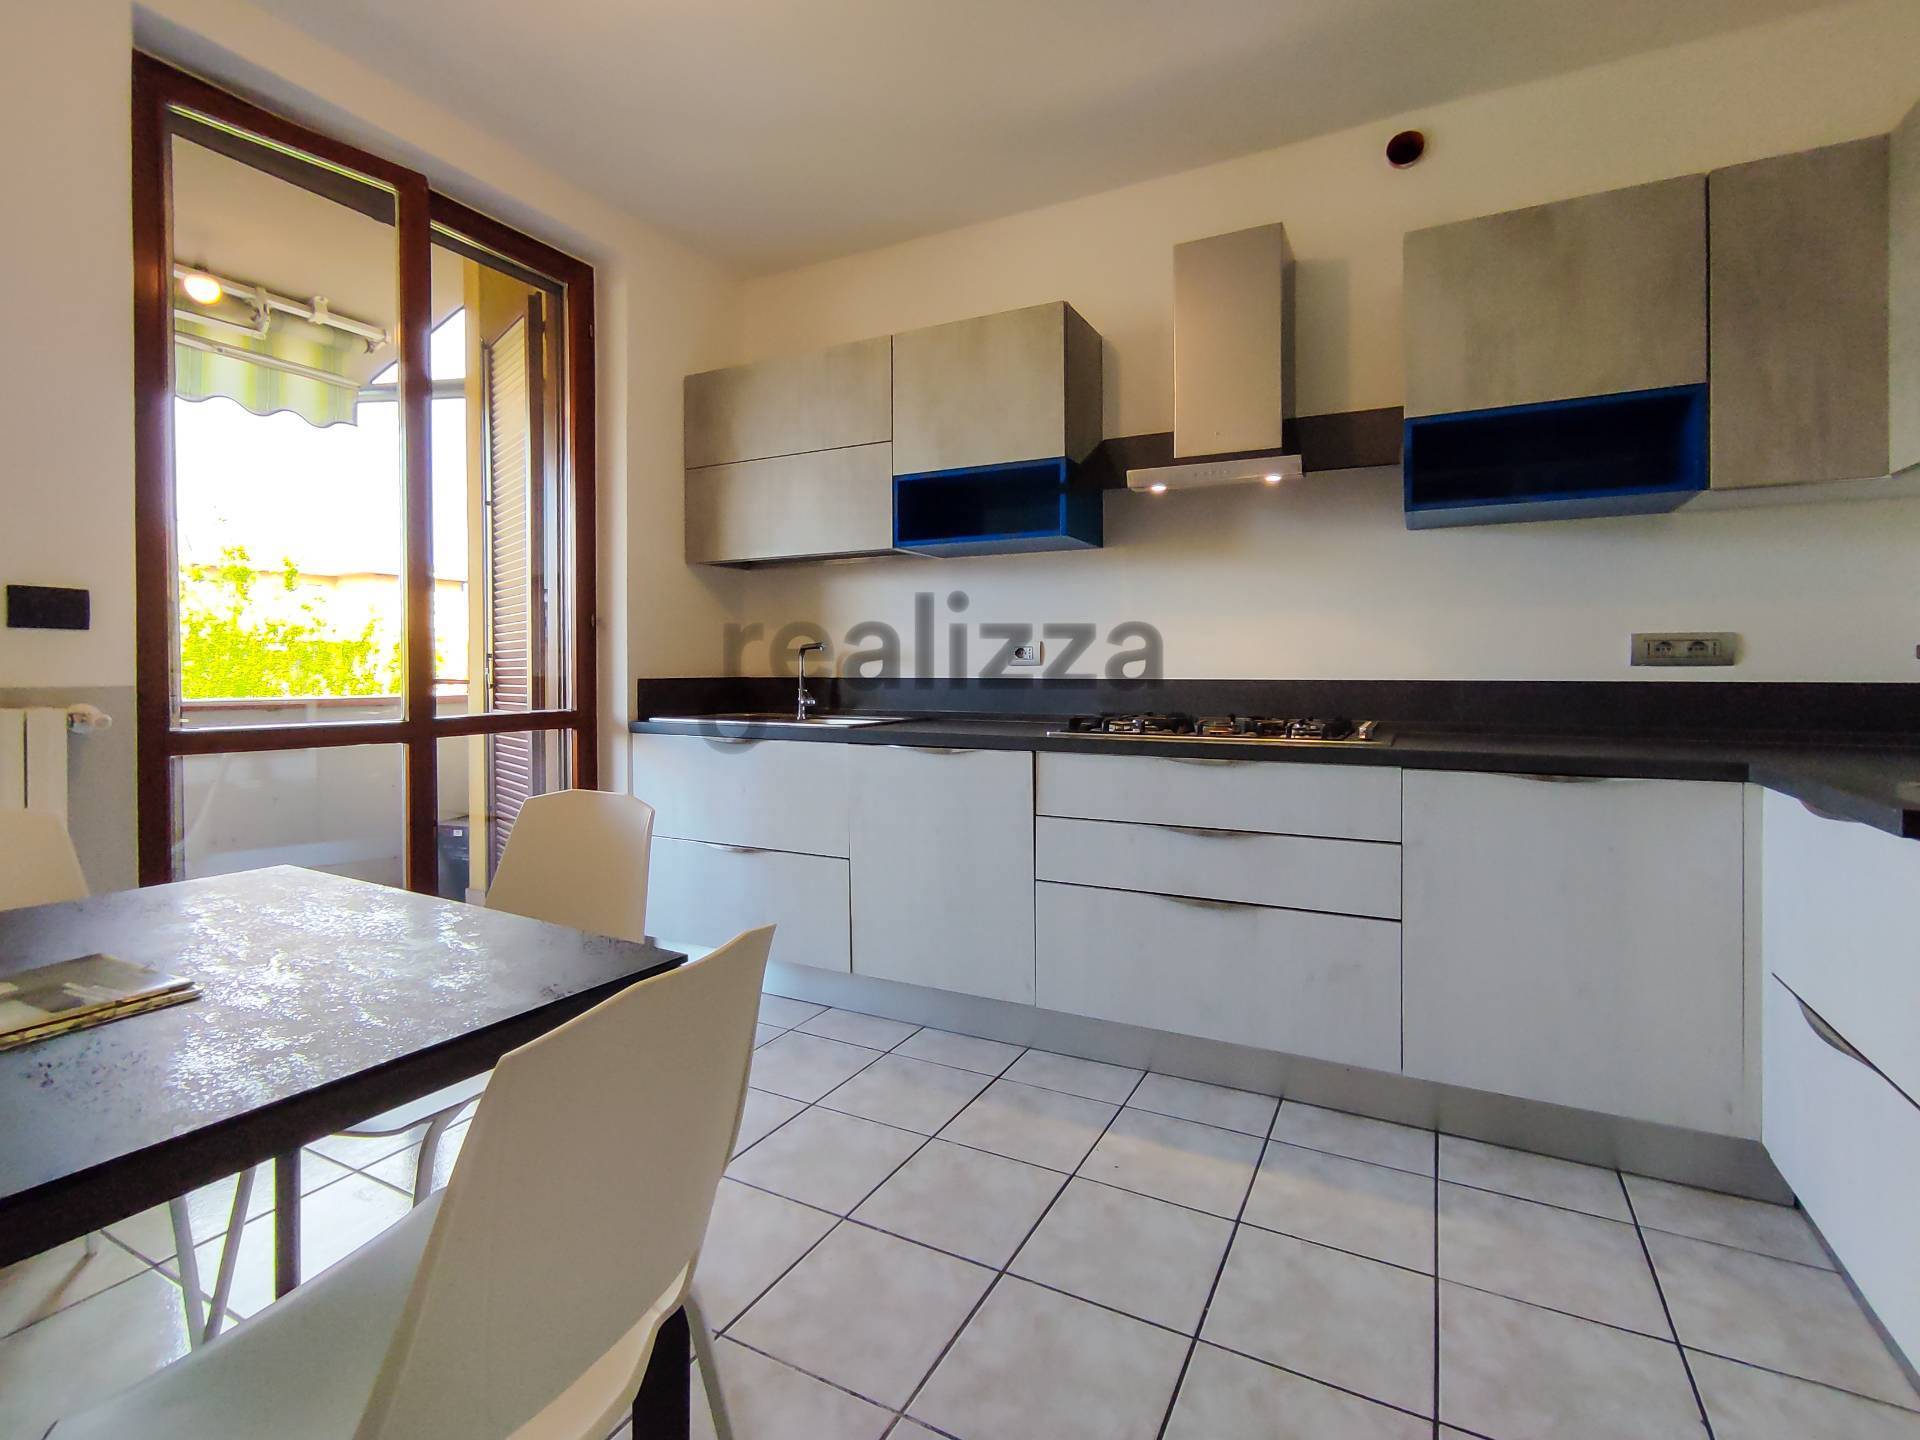 Appartamento in vendita a Madone, 3 locali, prezzo € 127.000 | PortaleAgenzieImmobiliari.it